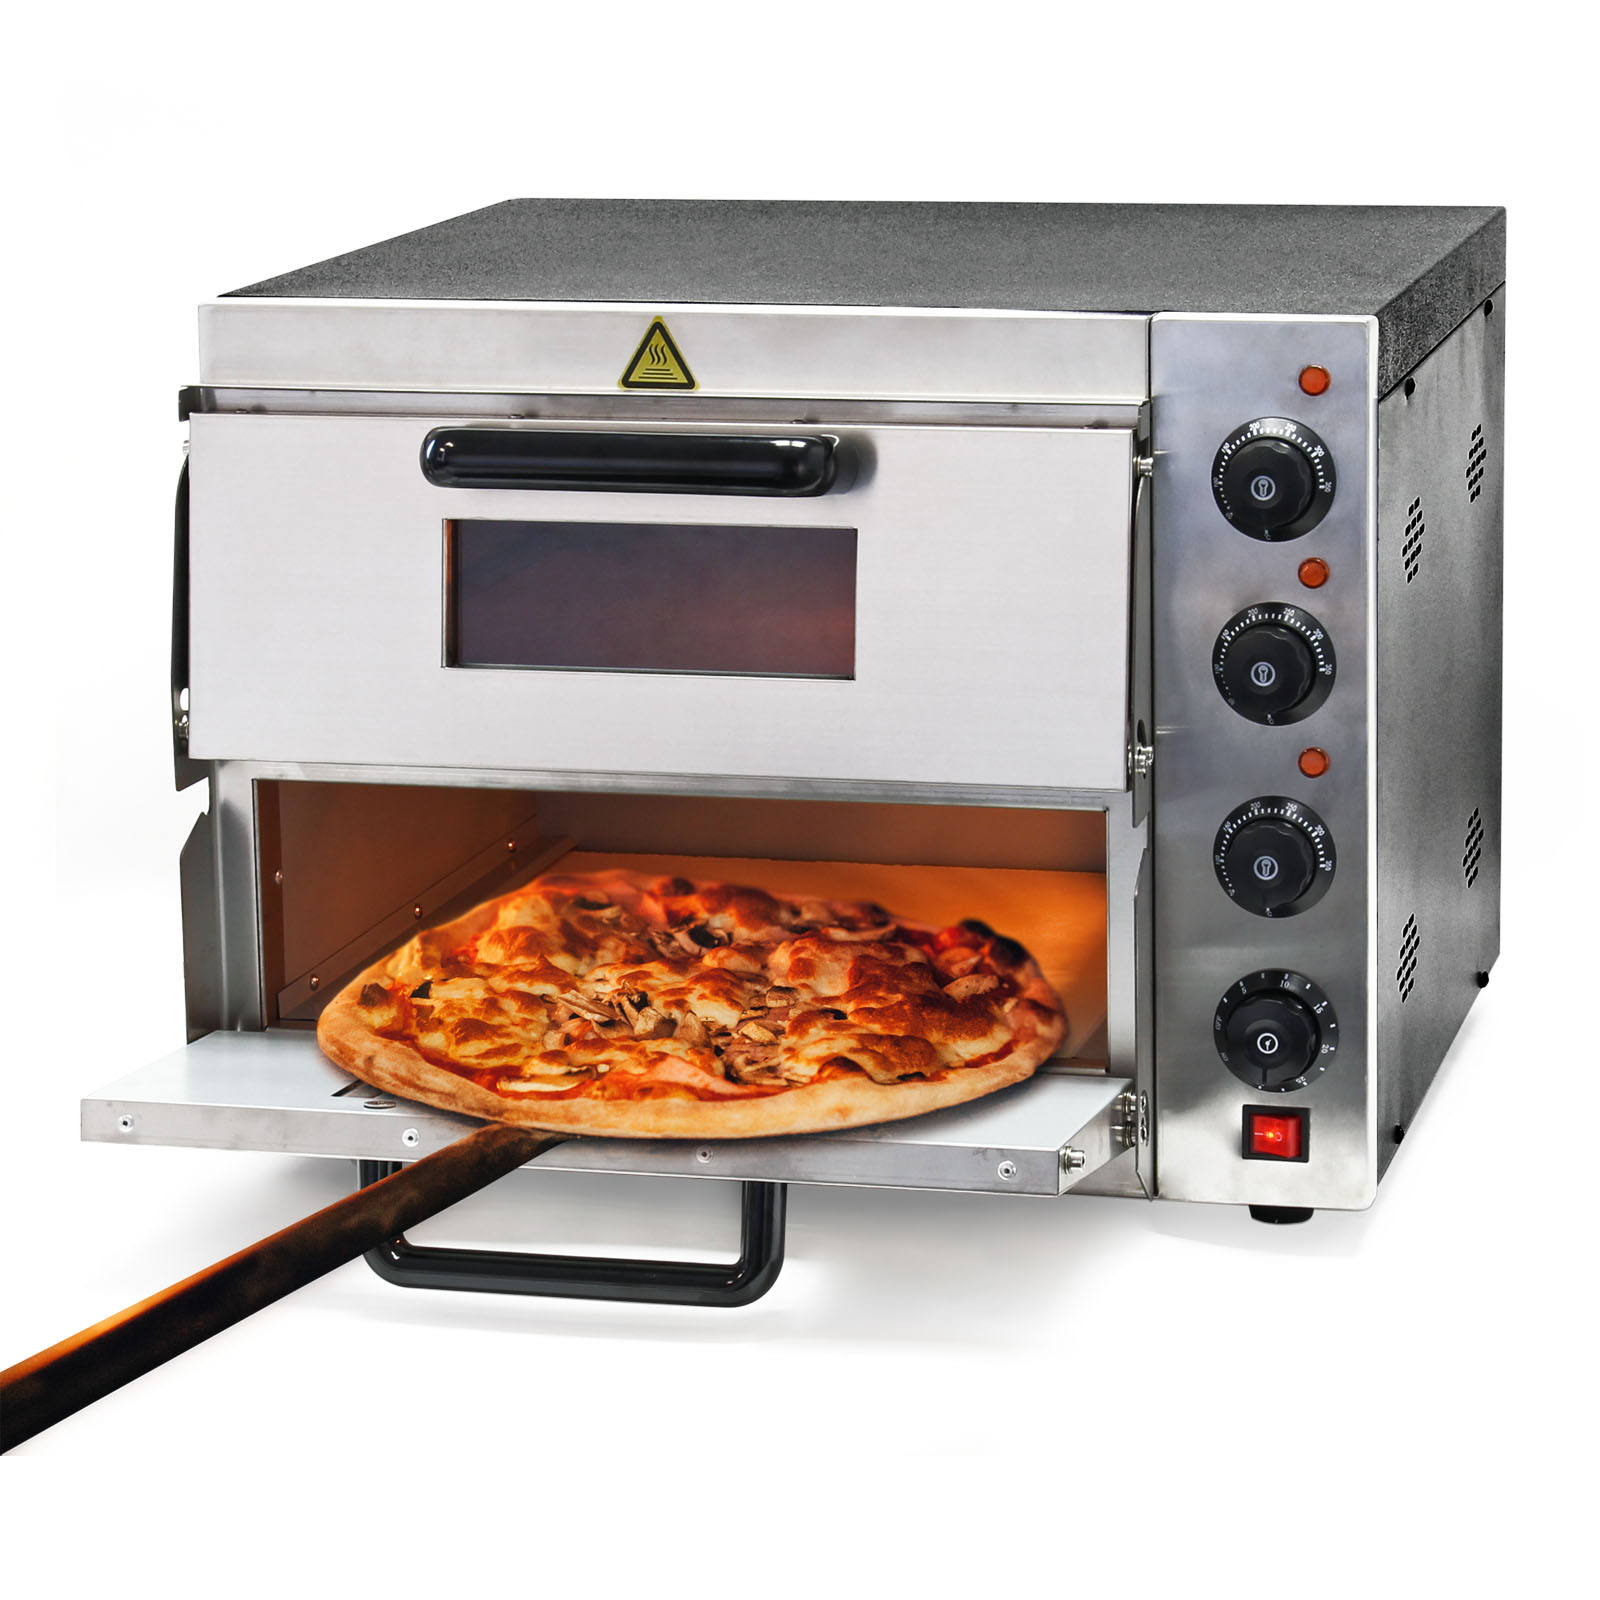 De Longhi Forno Pizza Elettrico Potenza 1200 Watt Temperatura 400 °C con  Pietra Refrattaria Antiaderente colore Nero - 917